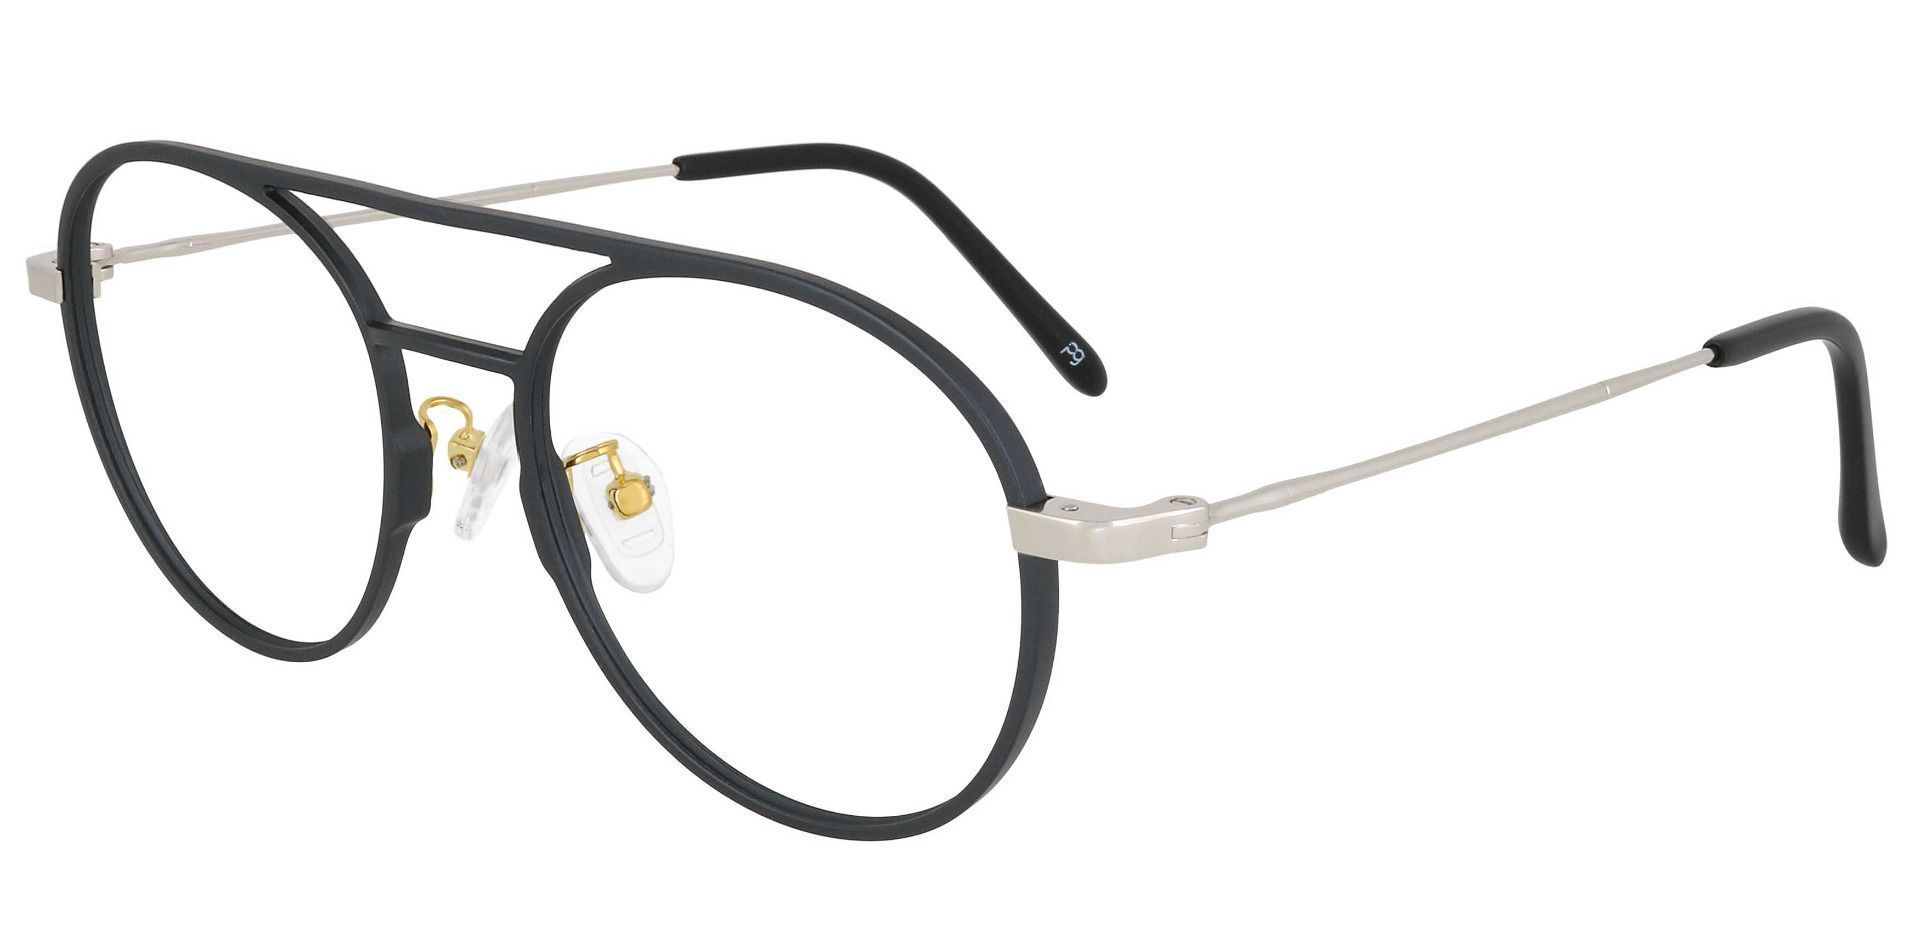 Carnaby Aviator Prescription Glasses - Gray